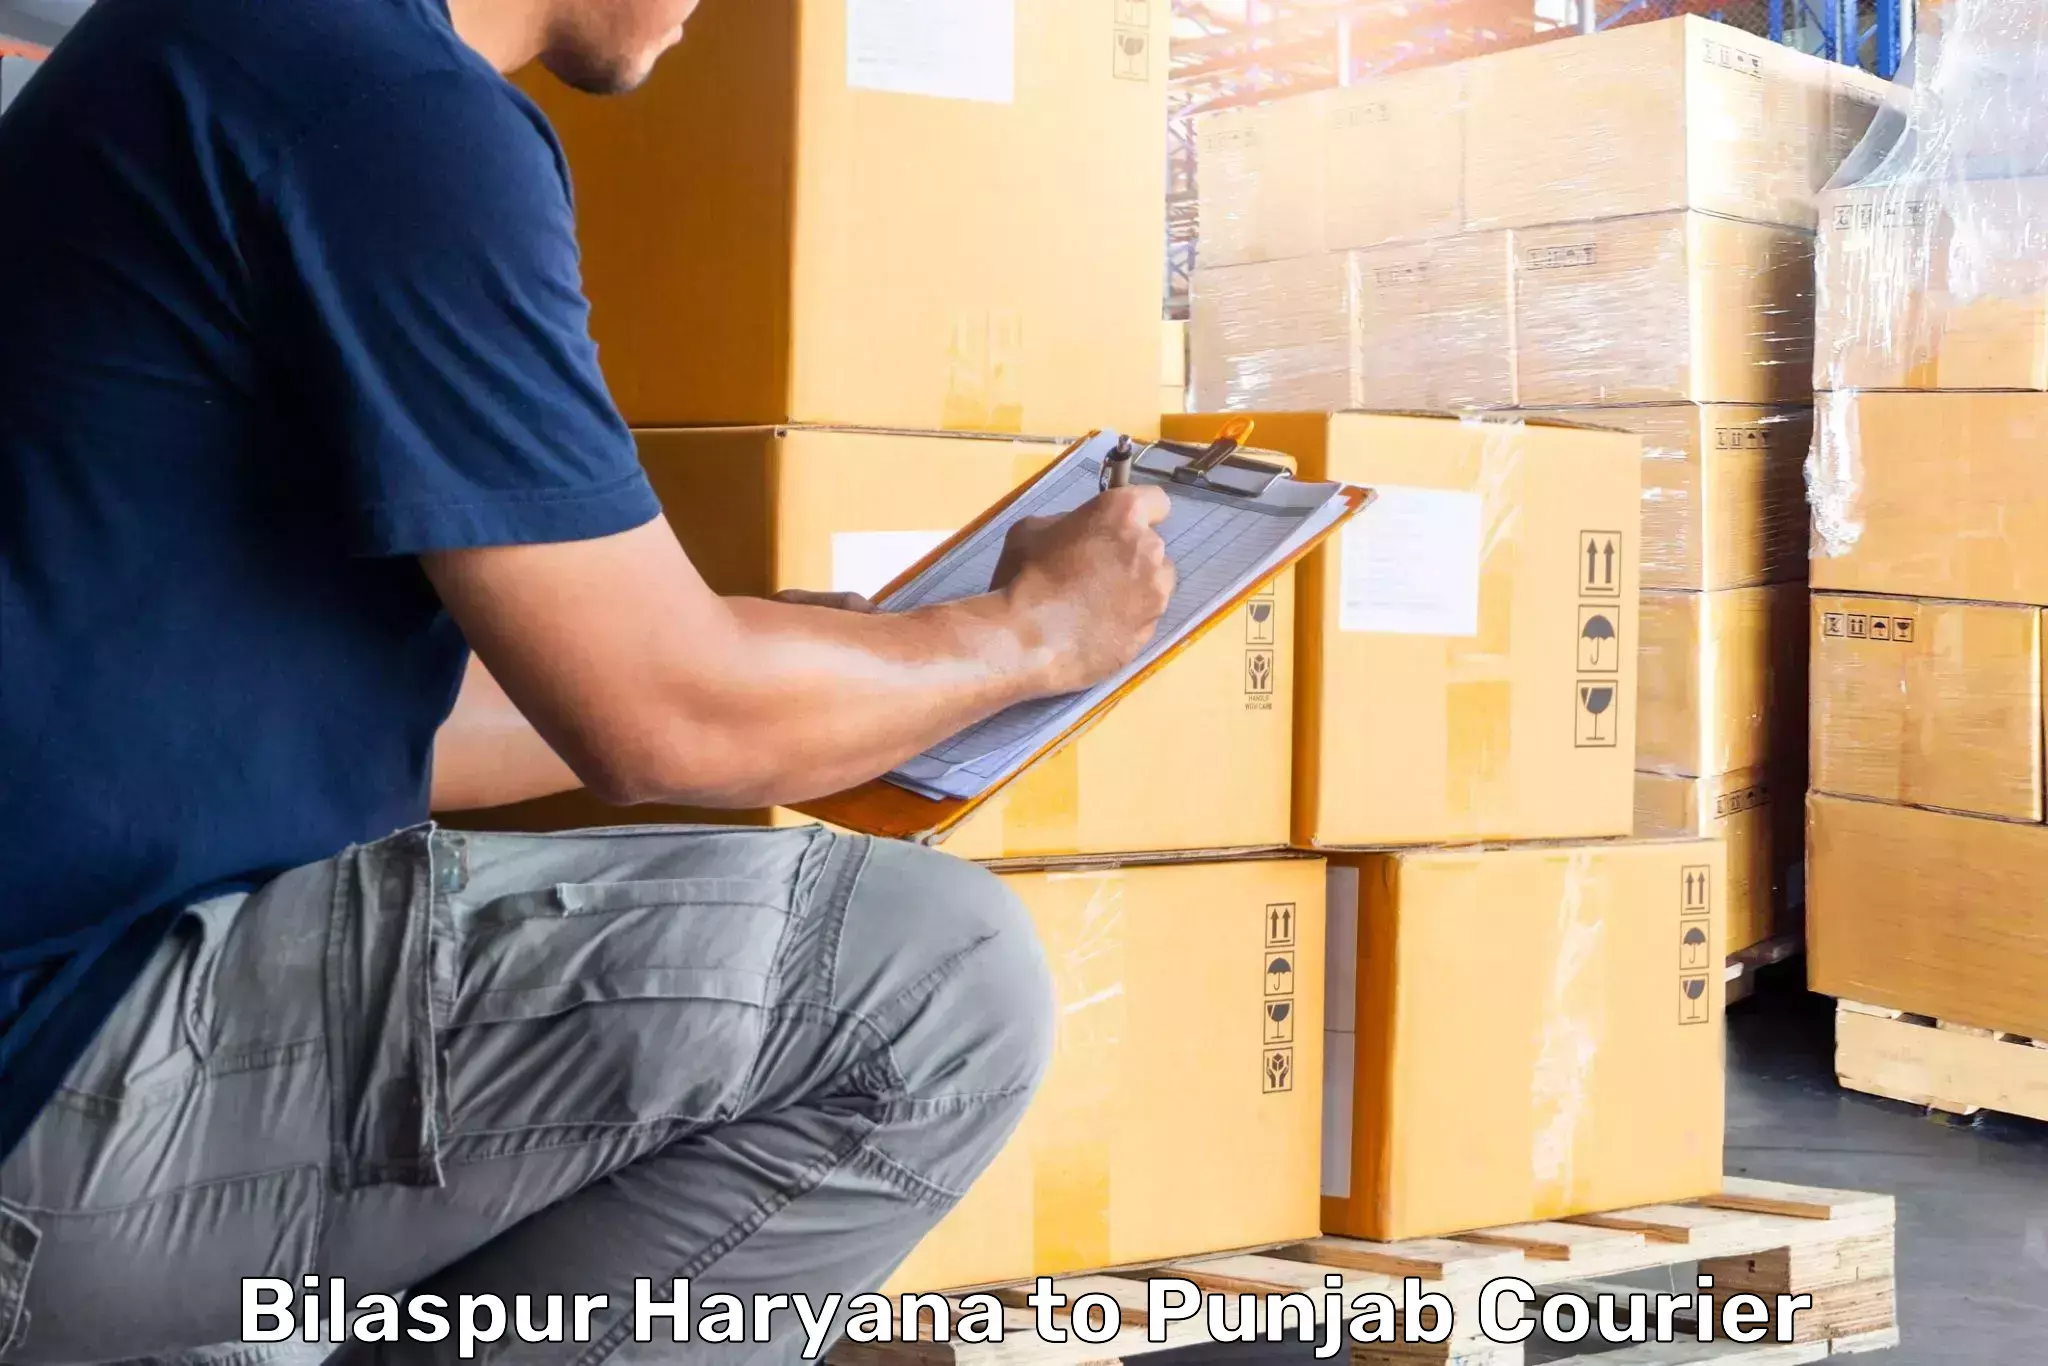 Baggage shipping service Bilaspur Haryana to Amritsar